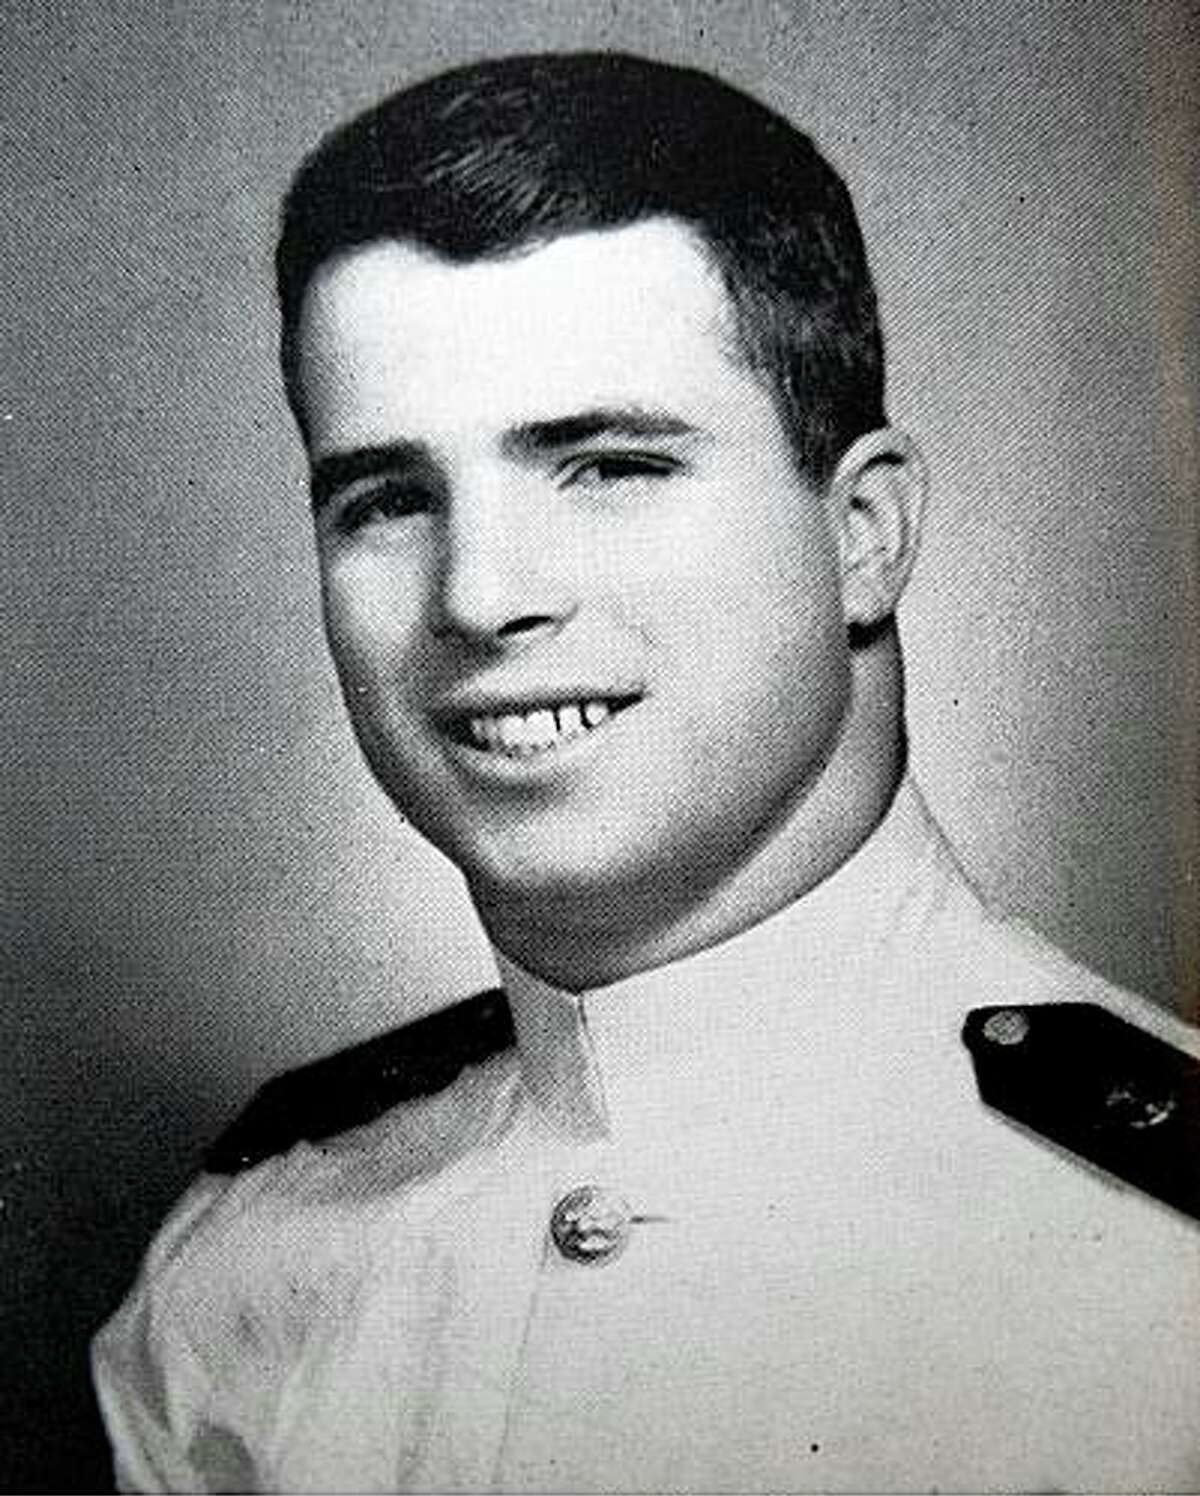 Oficjalny portret młodego, ciemnowłosego mężczyzny w białym mundurze marynarki wojennej